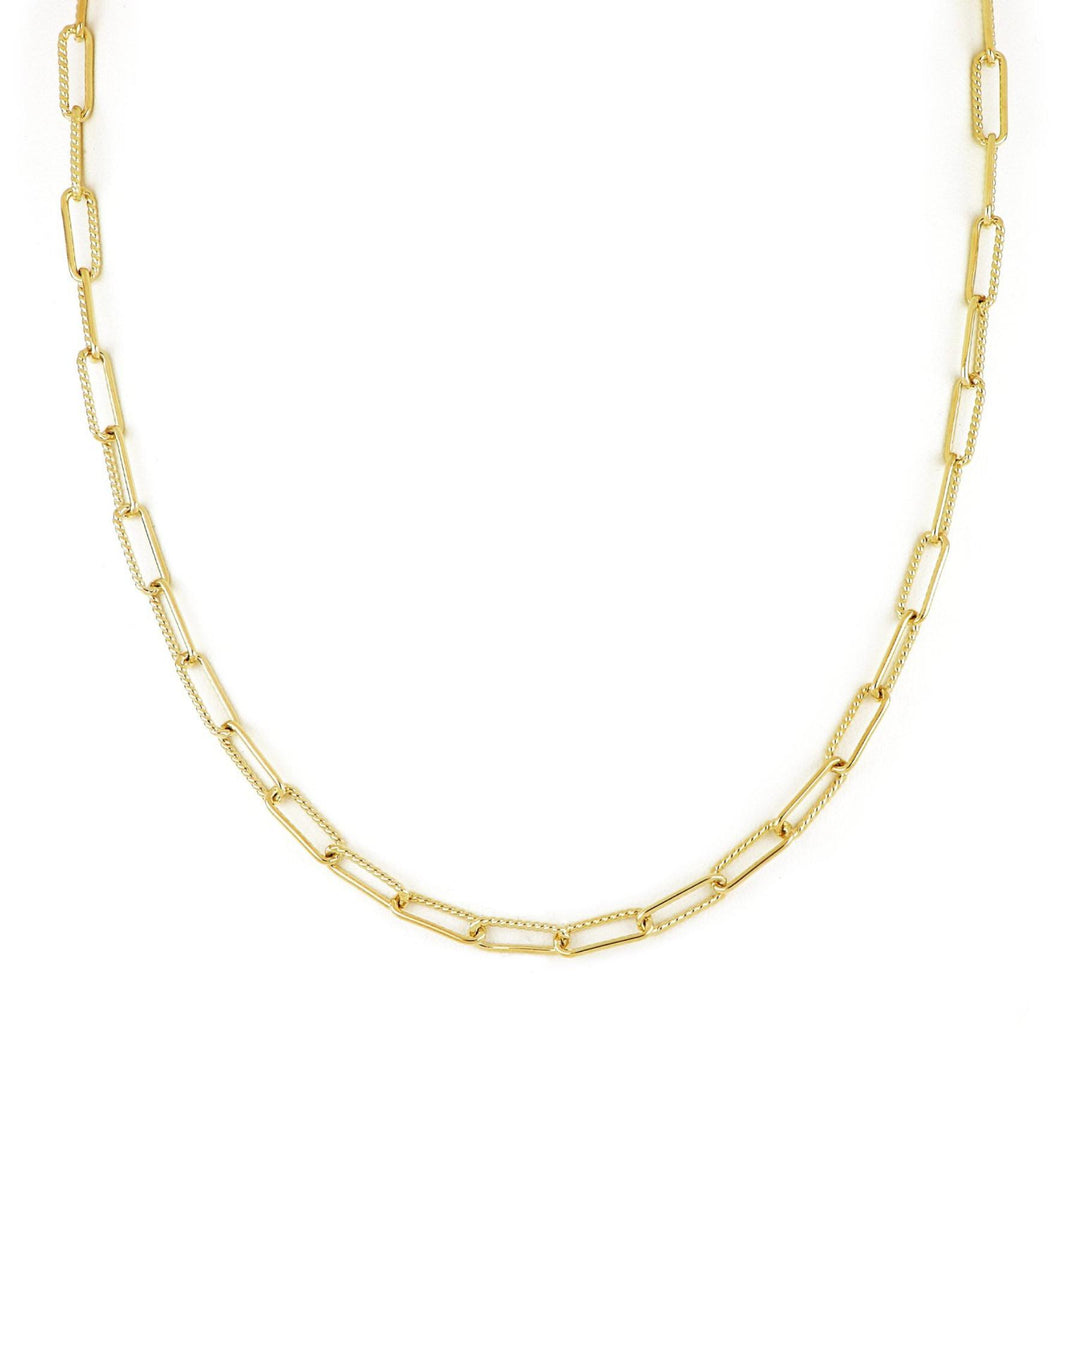 John Medeiros Diamante Gold Necklace Link